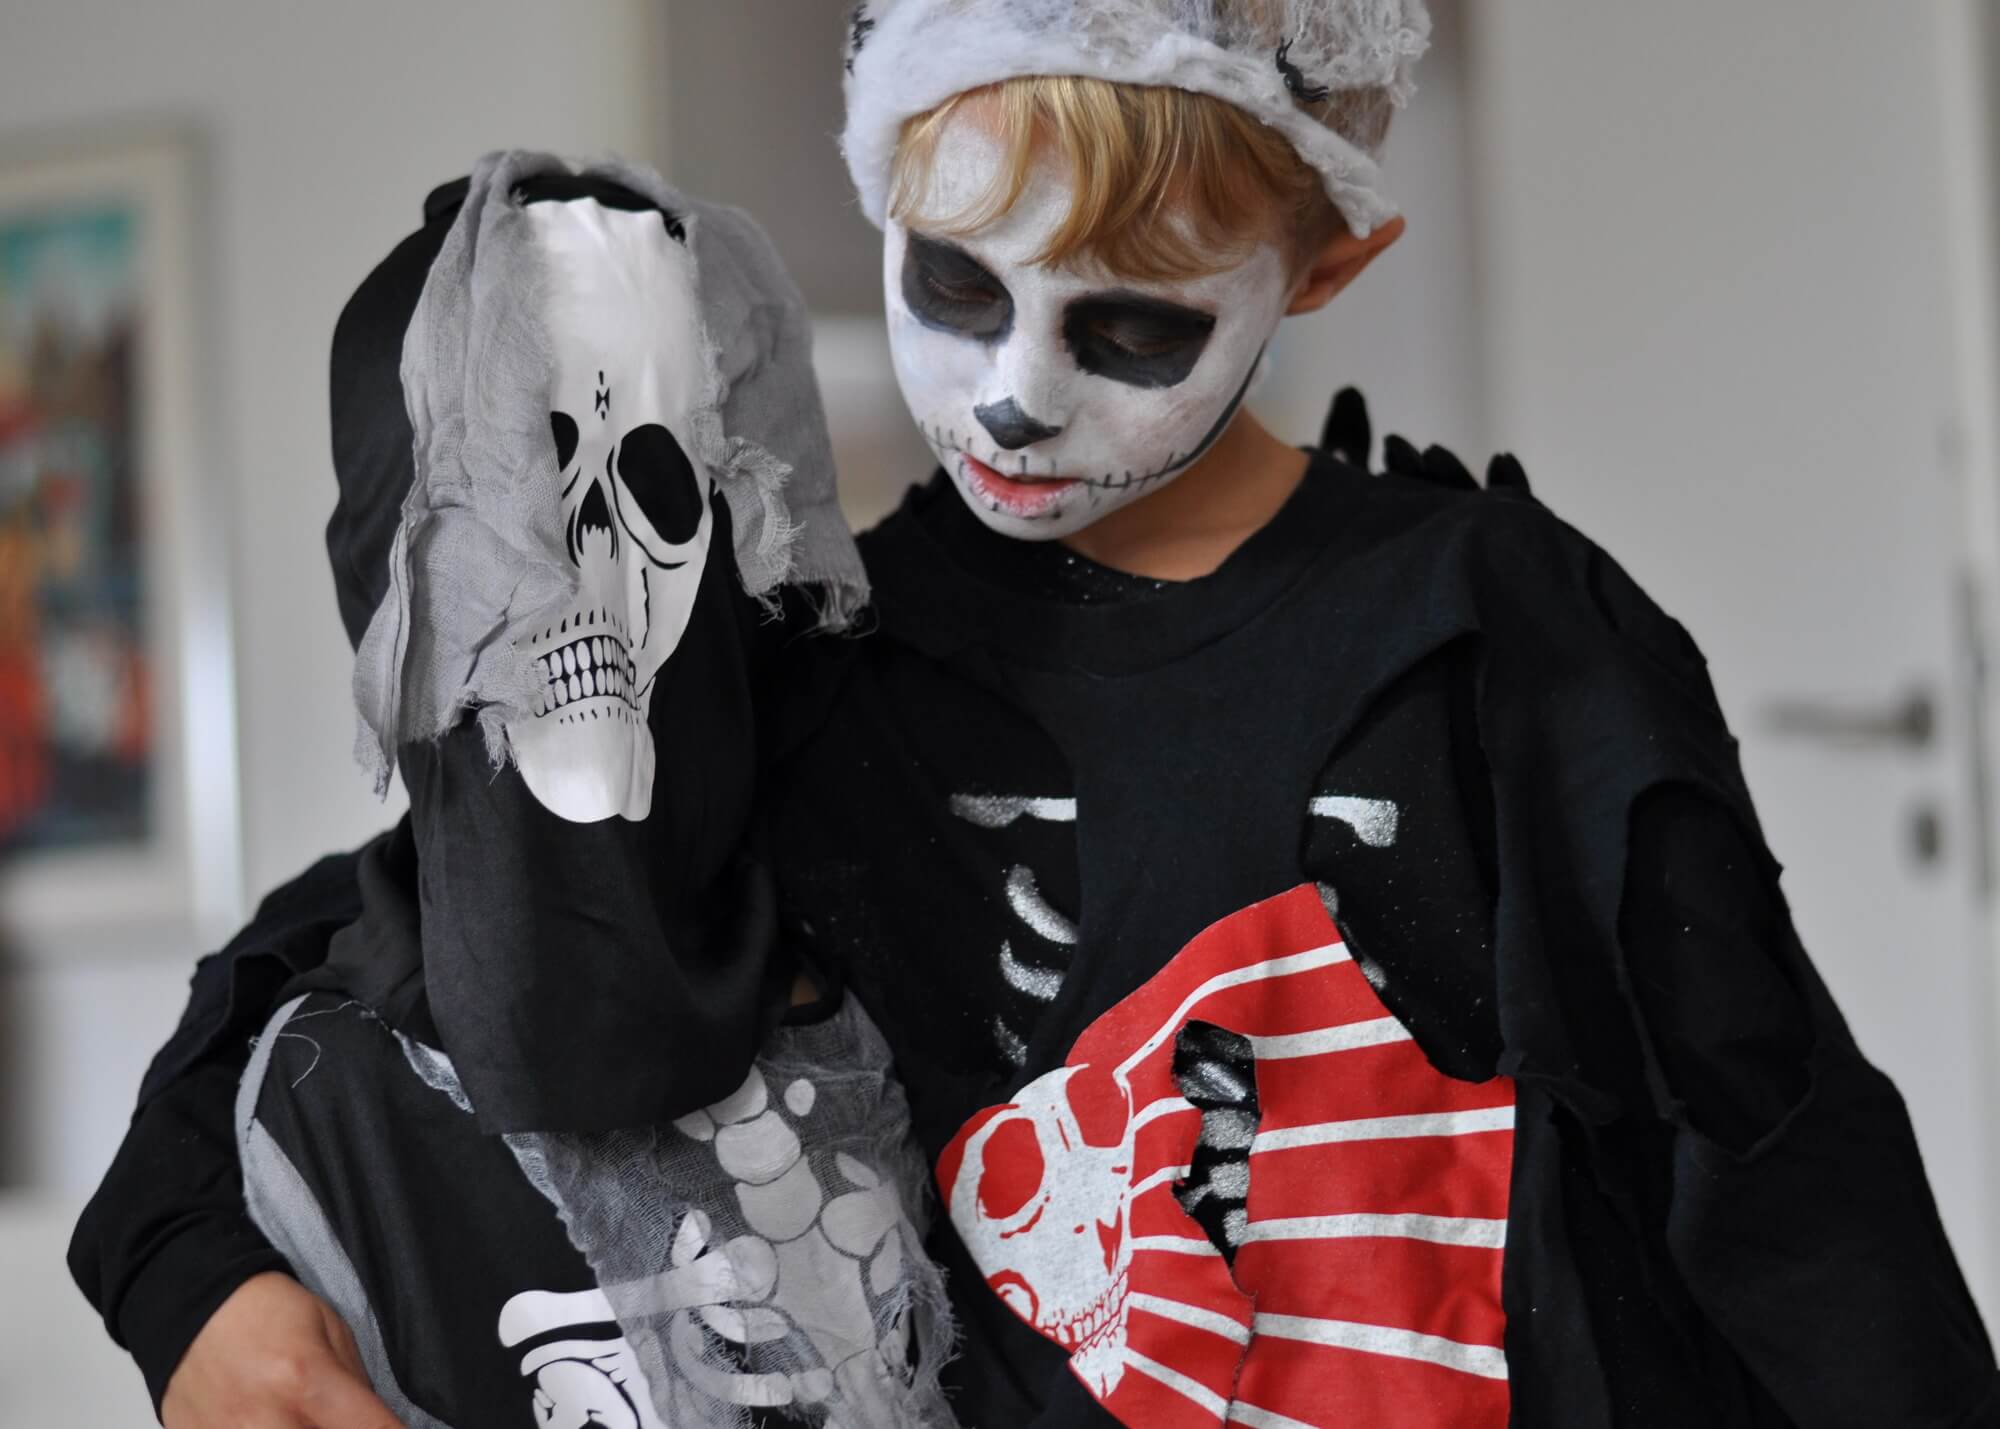 Halloween-Kostüm kaufen oder selbst basteln? Ich zeige euch, wie man ein Skelett-Kostüm easy selbst bastelt und pimpen kann. Imer Vergleich dazu ein Kostüm von der Stange. #halloween #skelett #kostüm #verkleiden #diy #basteln #kinder